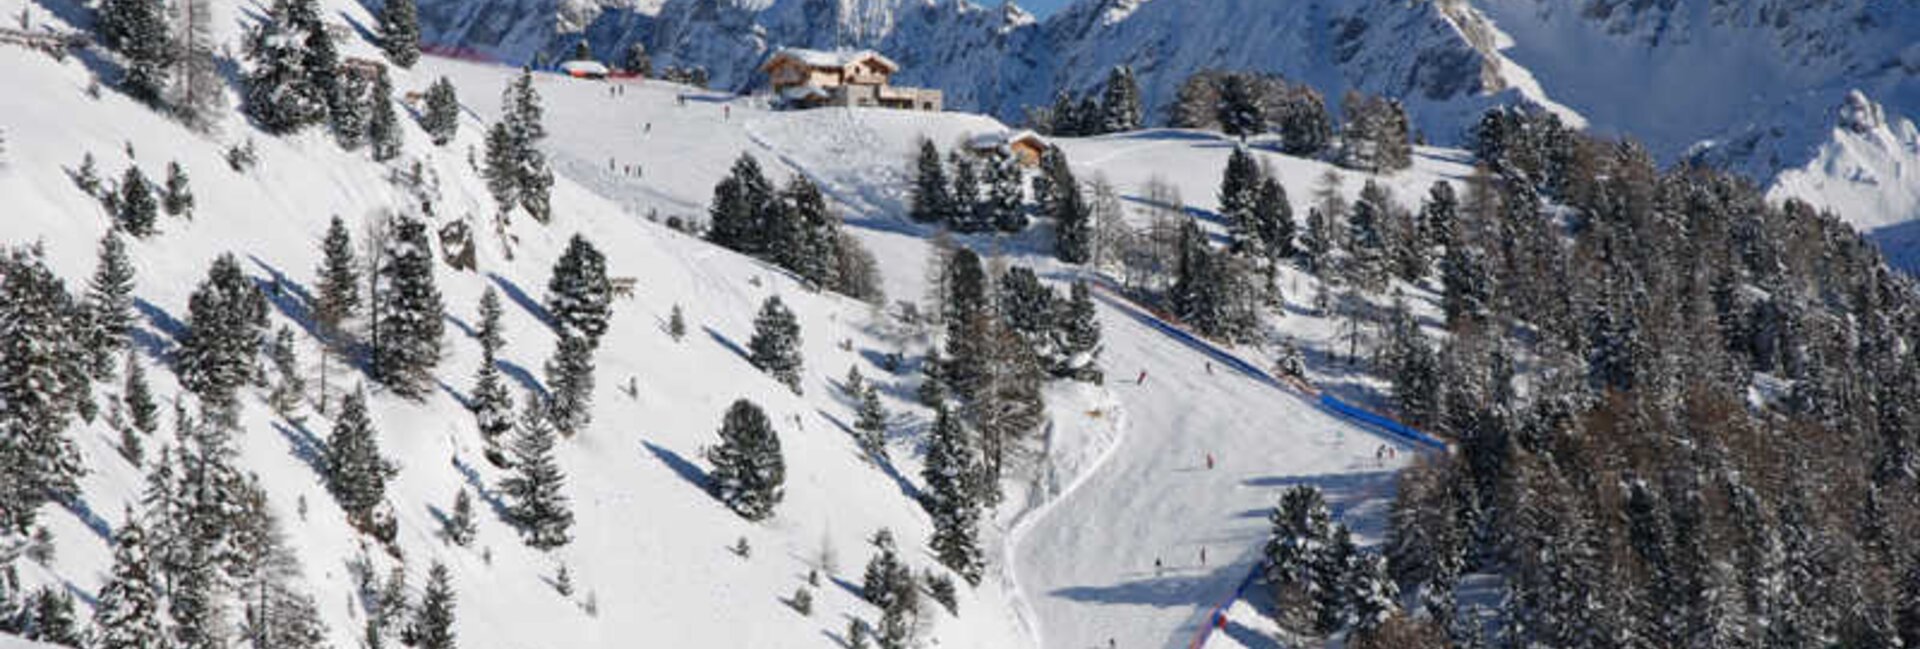 Pozza di Fassa-Aloch-Buffaure, sciare nelle cuore delle Dolomiti